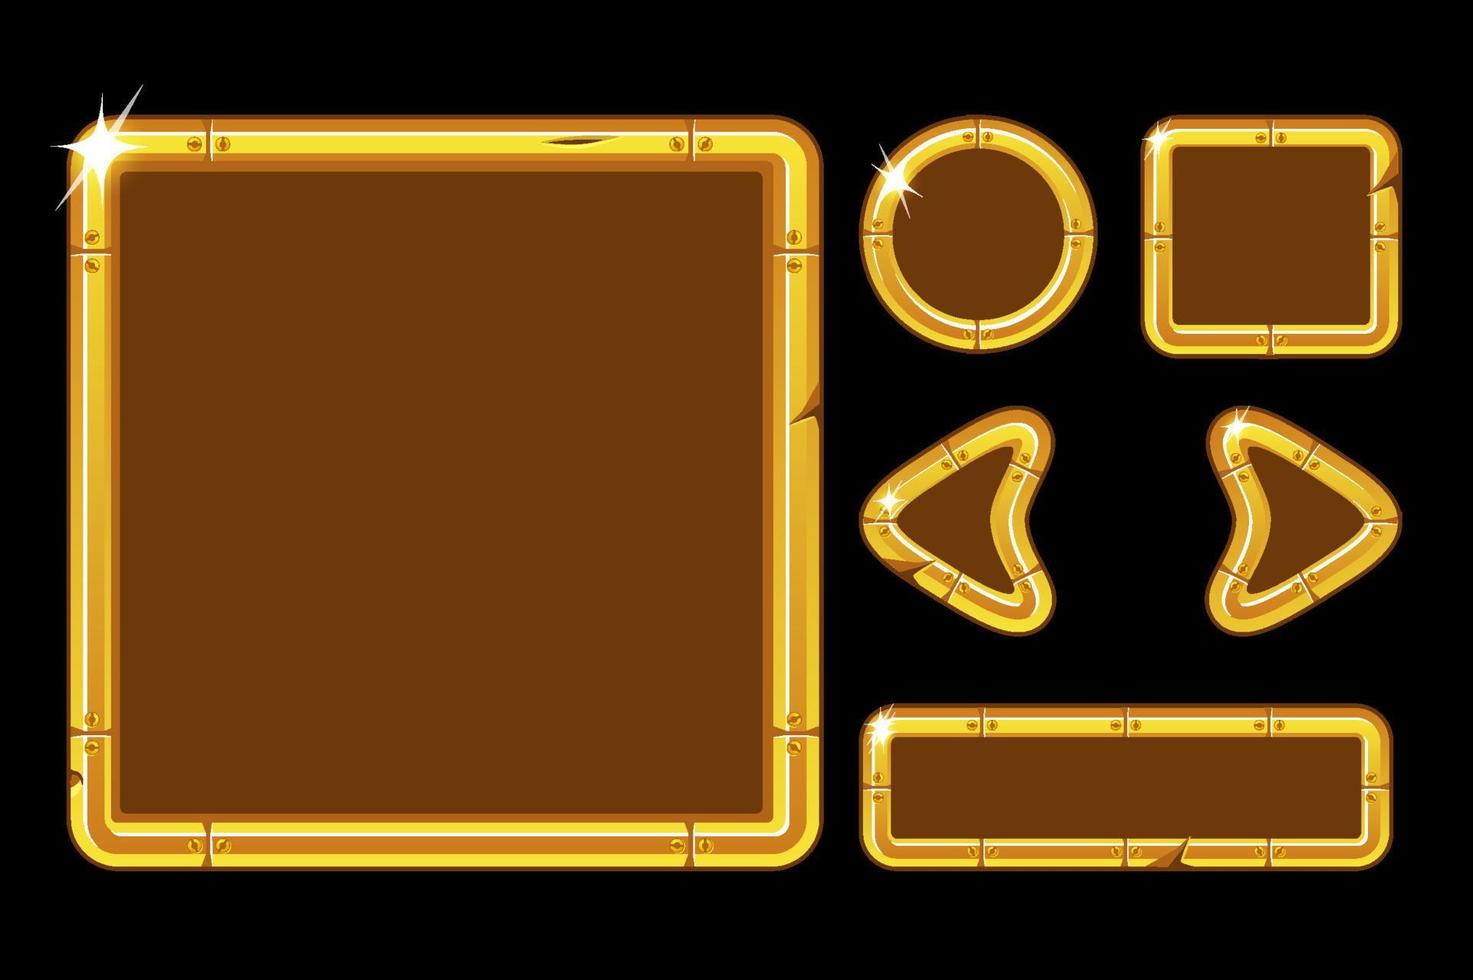 kit de interface do usuário do jogo vetorial. interface de usuário dourada para o menu do jogo. modelo de interface de janela de ouro com botões, setas. vetor